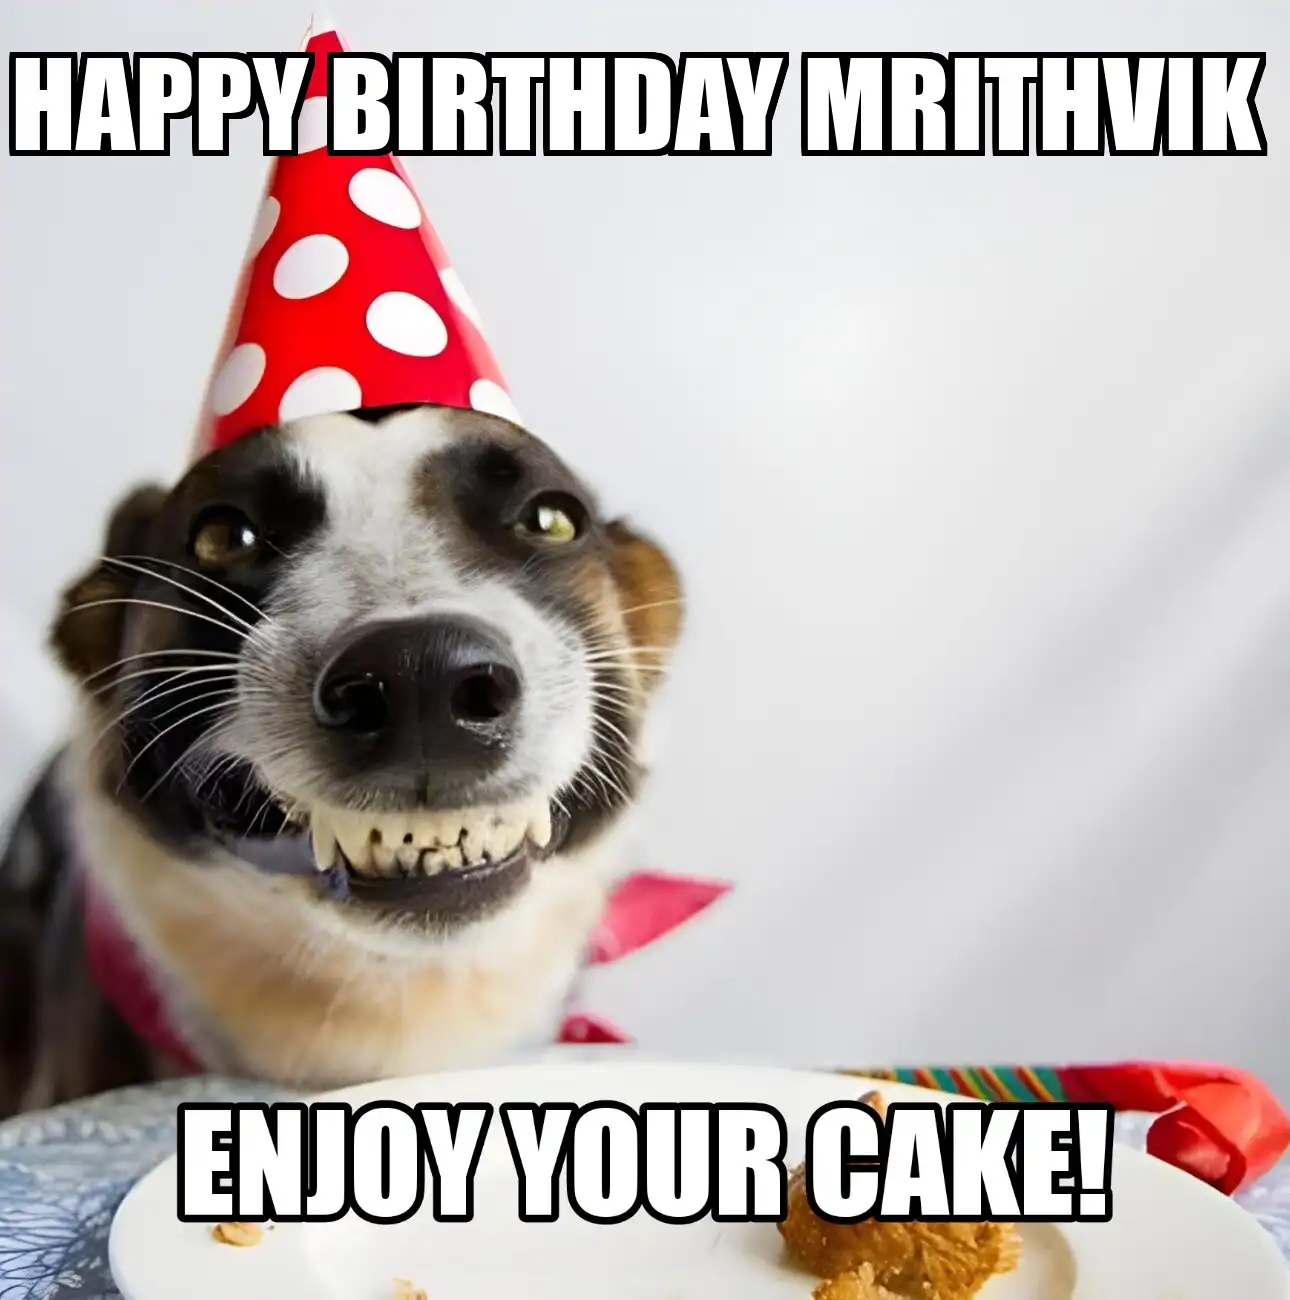 Happy Birthday Mrithvik Enjoy Your Cake Dog Meme